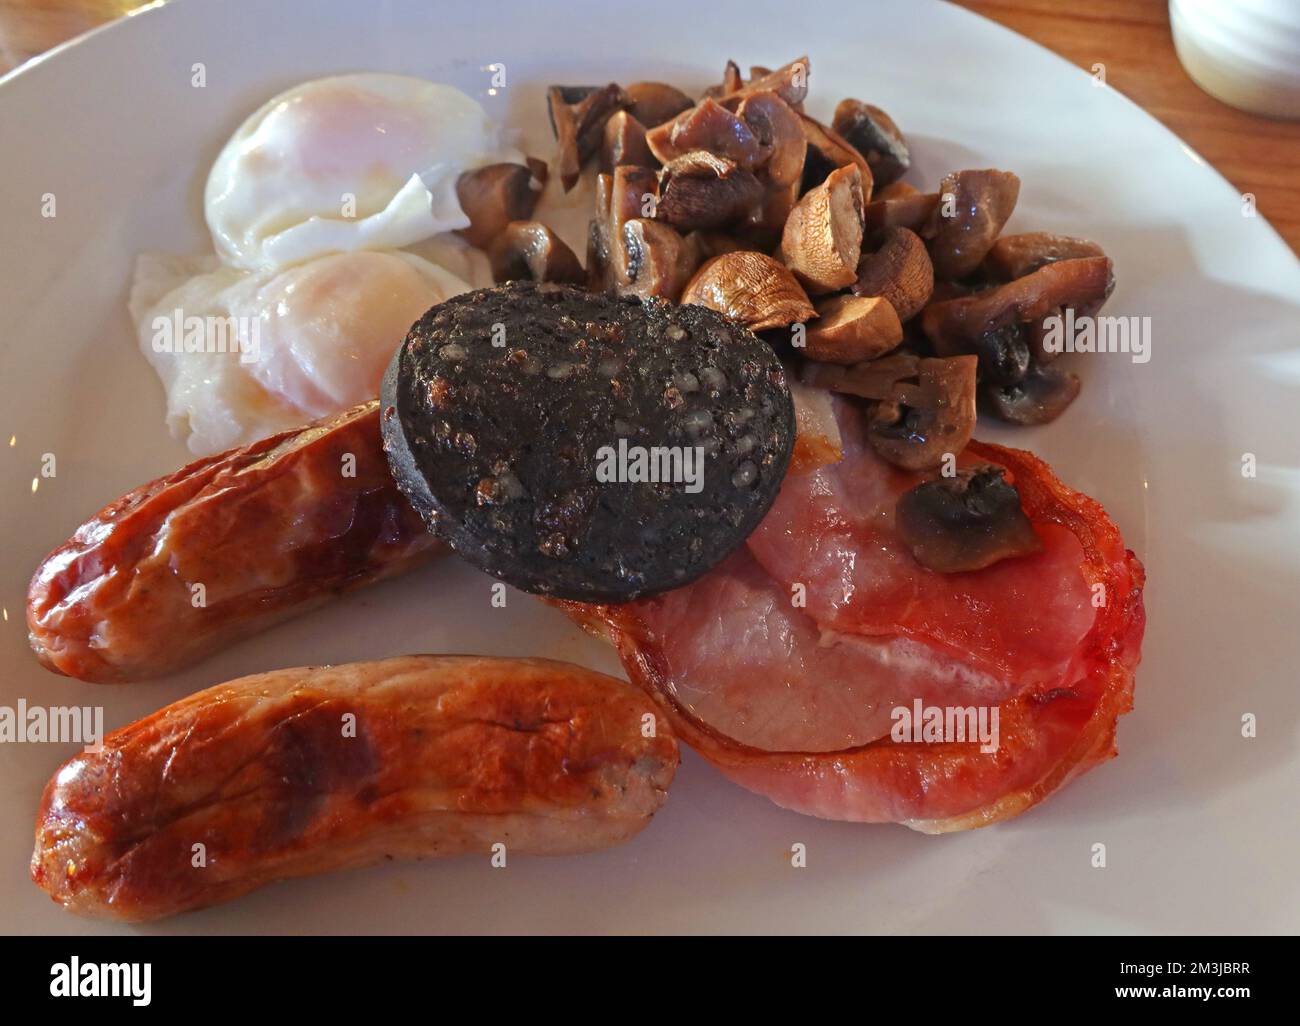 Petit déjeuner complet frit, champignons, bacon, saucisses, œuf poché, pudding noir, sur une assiette Banque D'Images